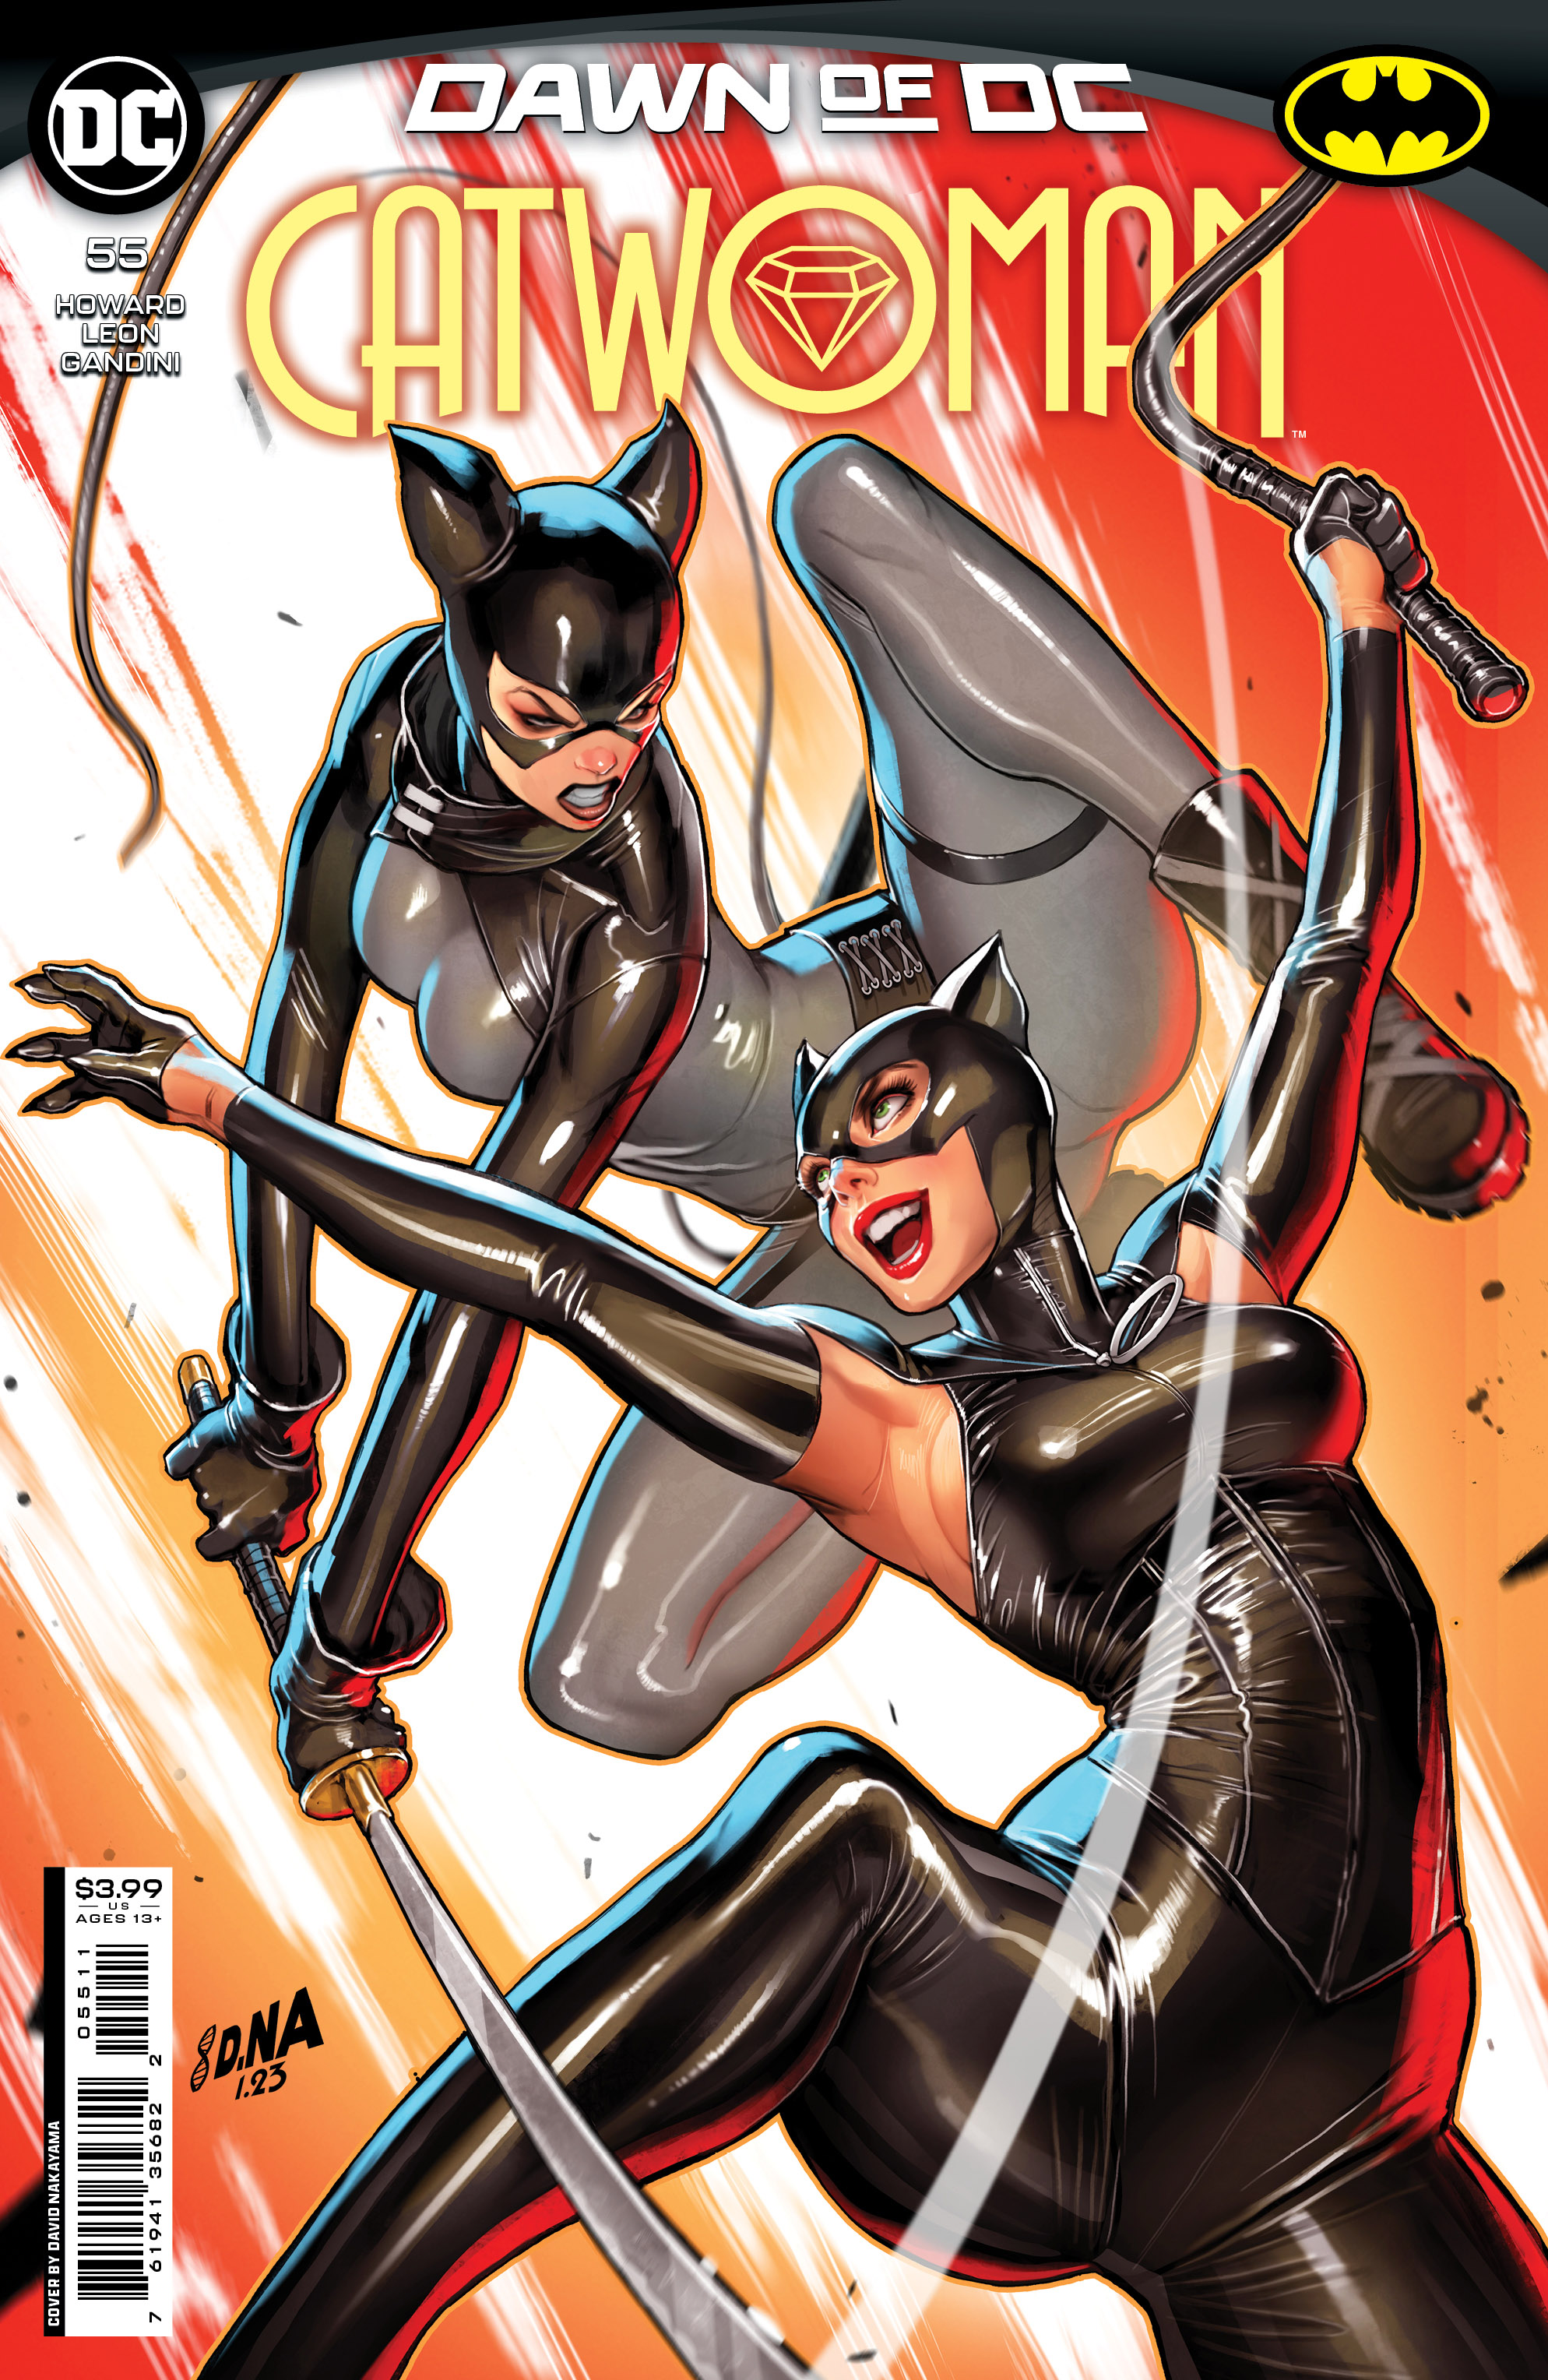 Catwoman #55 Cover A David Nakayama (2018)